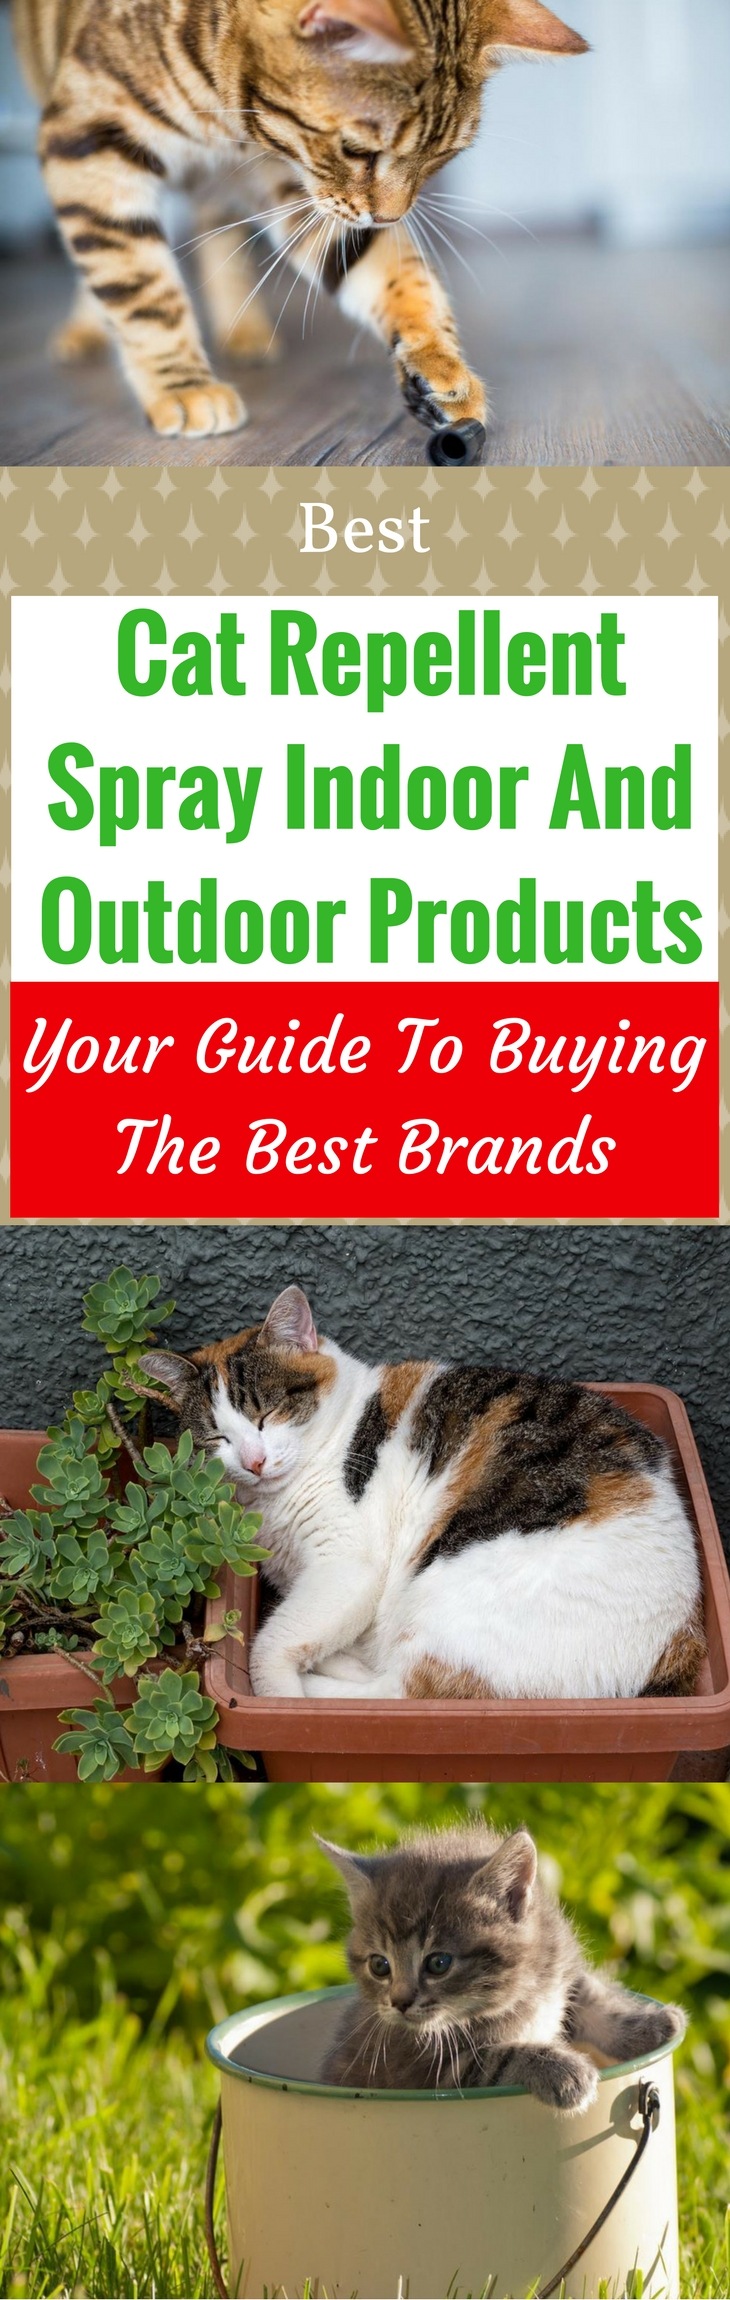 Best Cat Repellent Spray Indoor And Outdoor Products